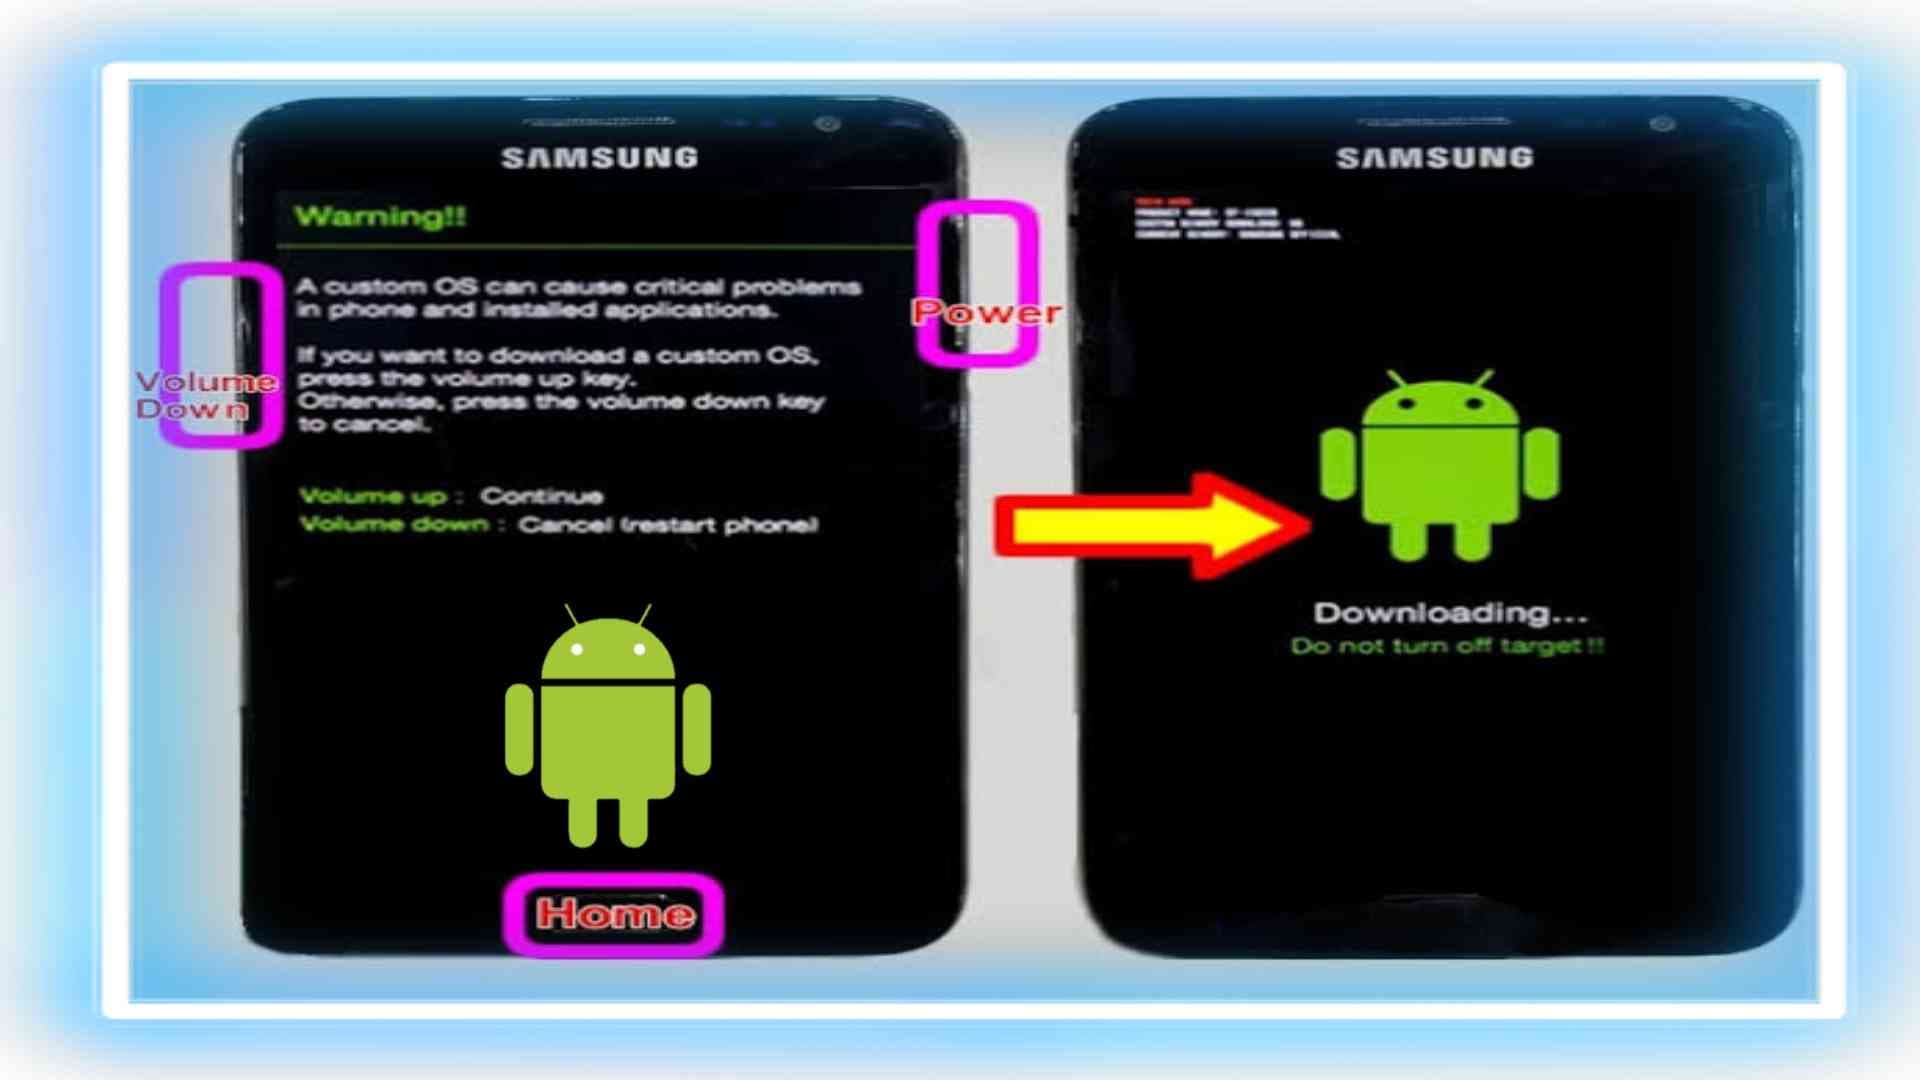 Cov kauj ruam los tsim software rau Android